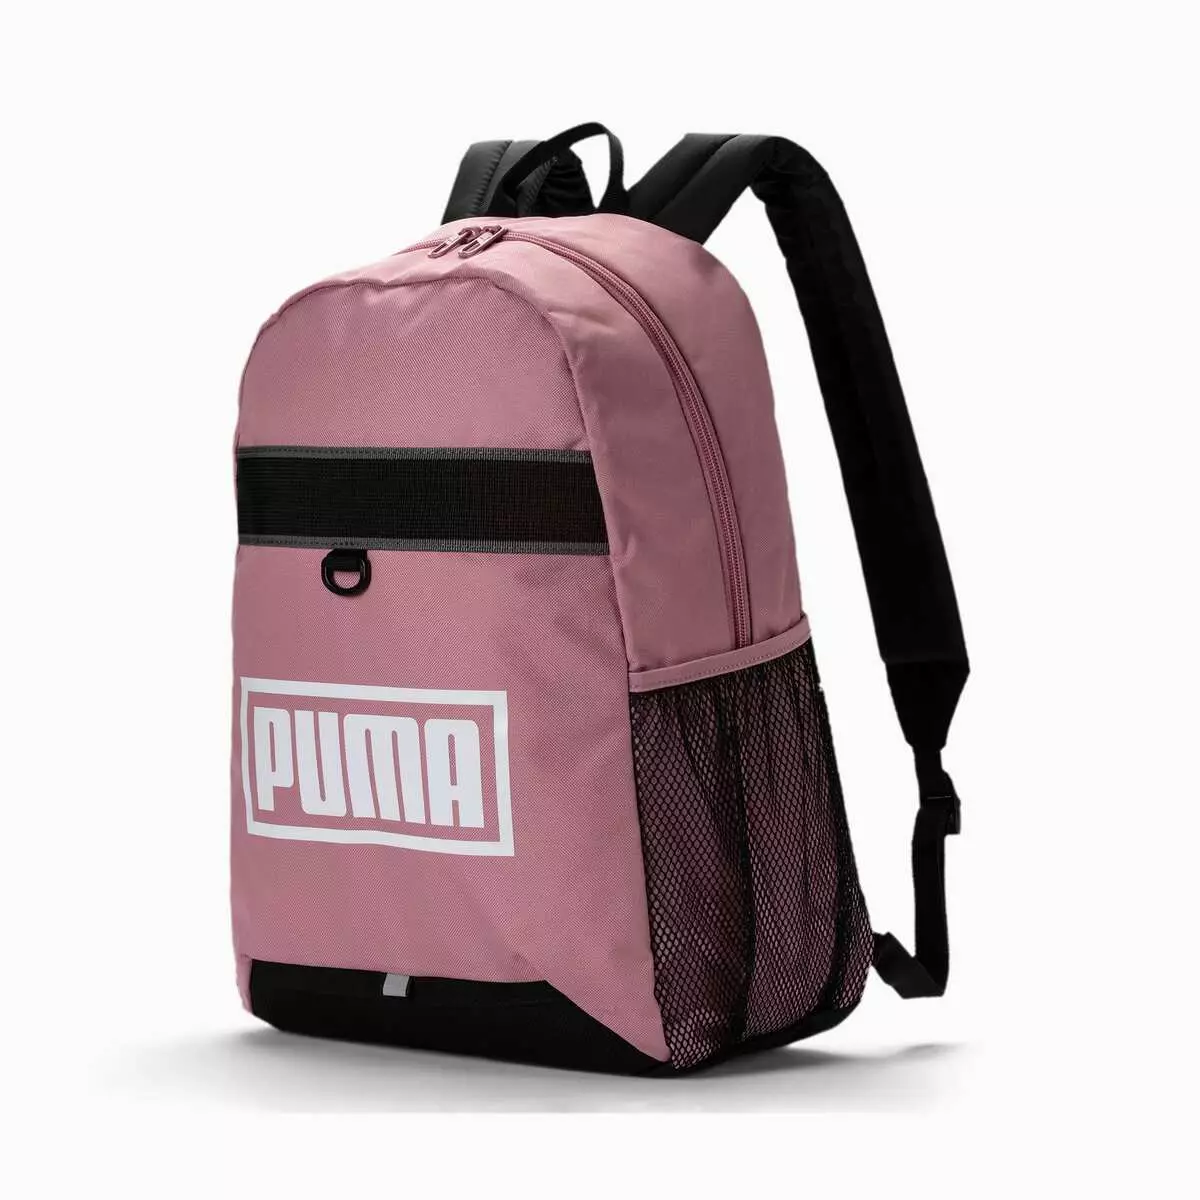 Puma hátizsákok: Nő és férfi, fekete, rózsaszín, bőr sport, kerek és egyéb eredeti modellek. Hogyan kell mosni? 15396_15